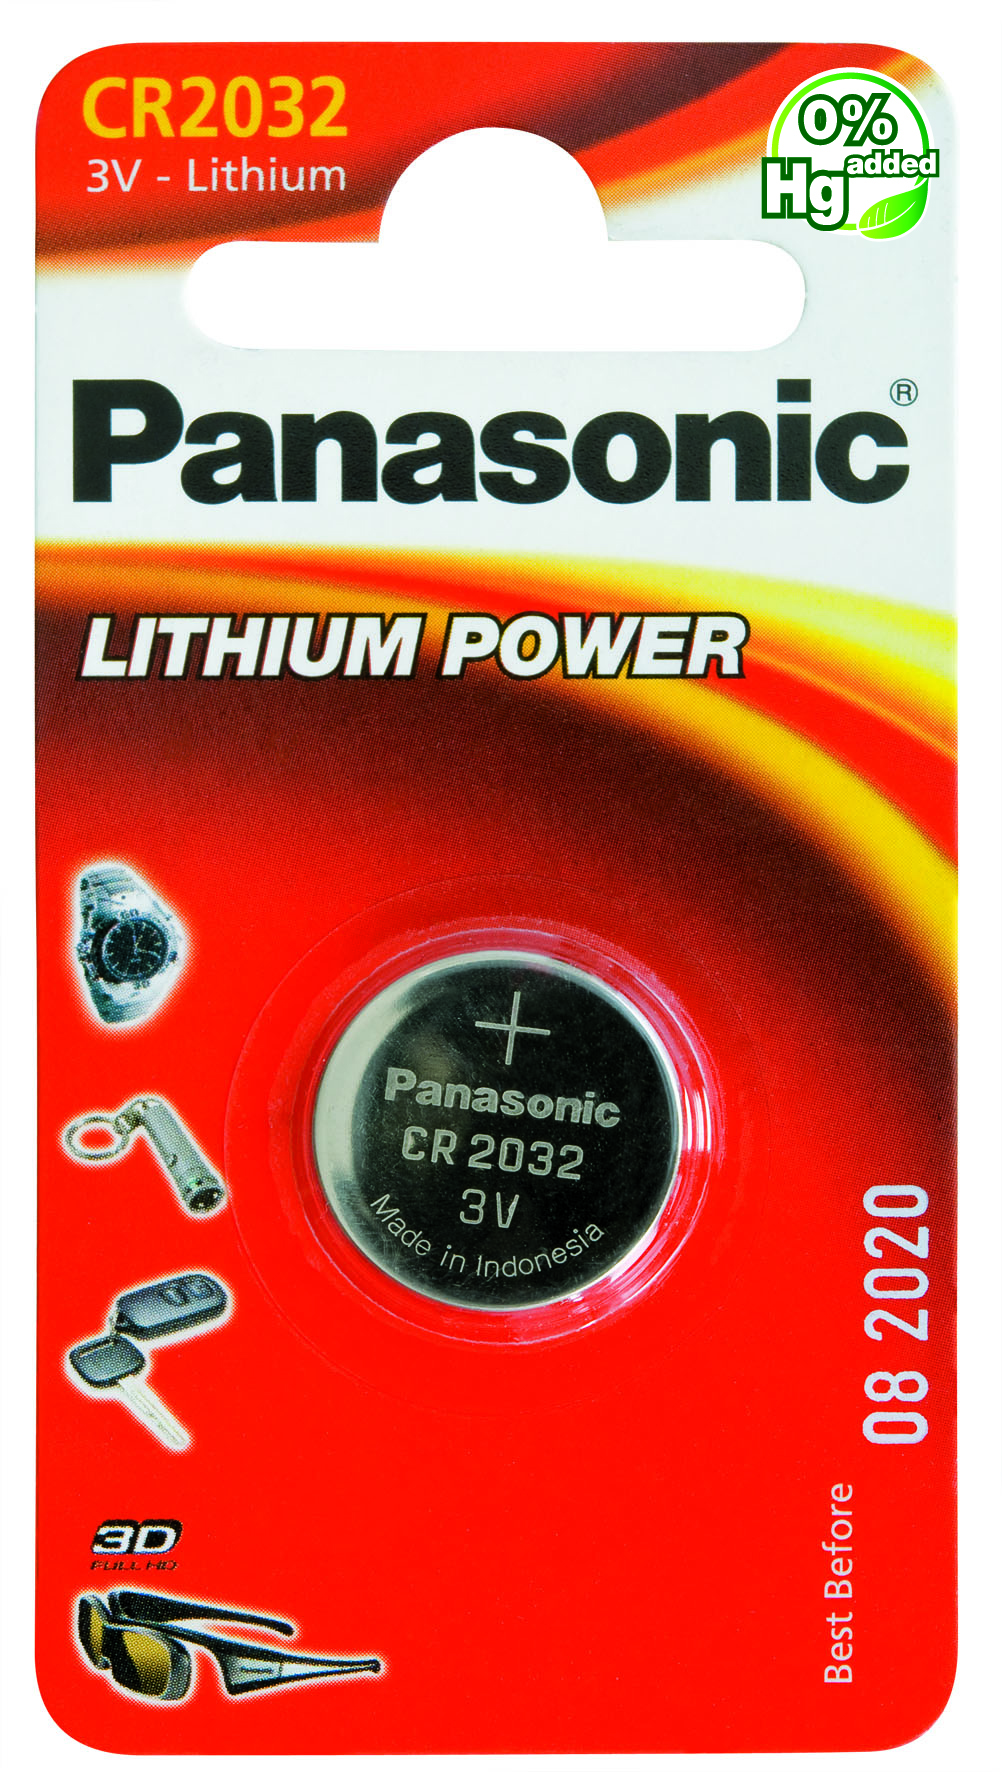 Panasonic Lithium Power 1x CR2032